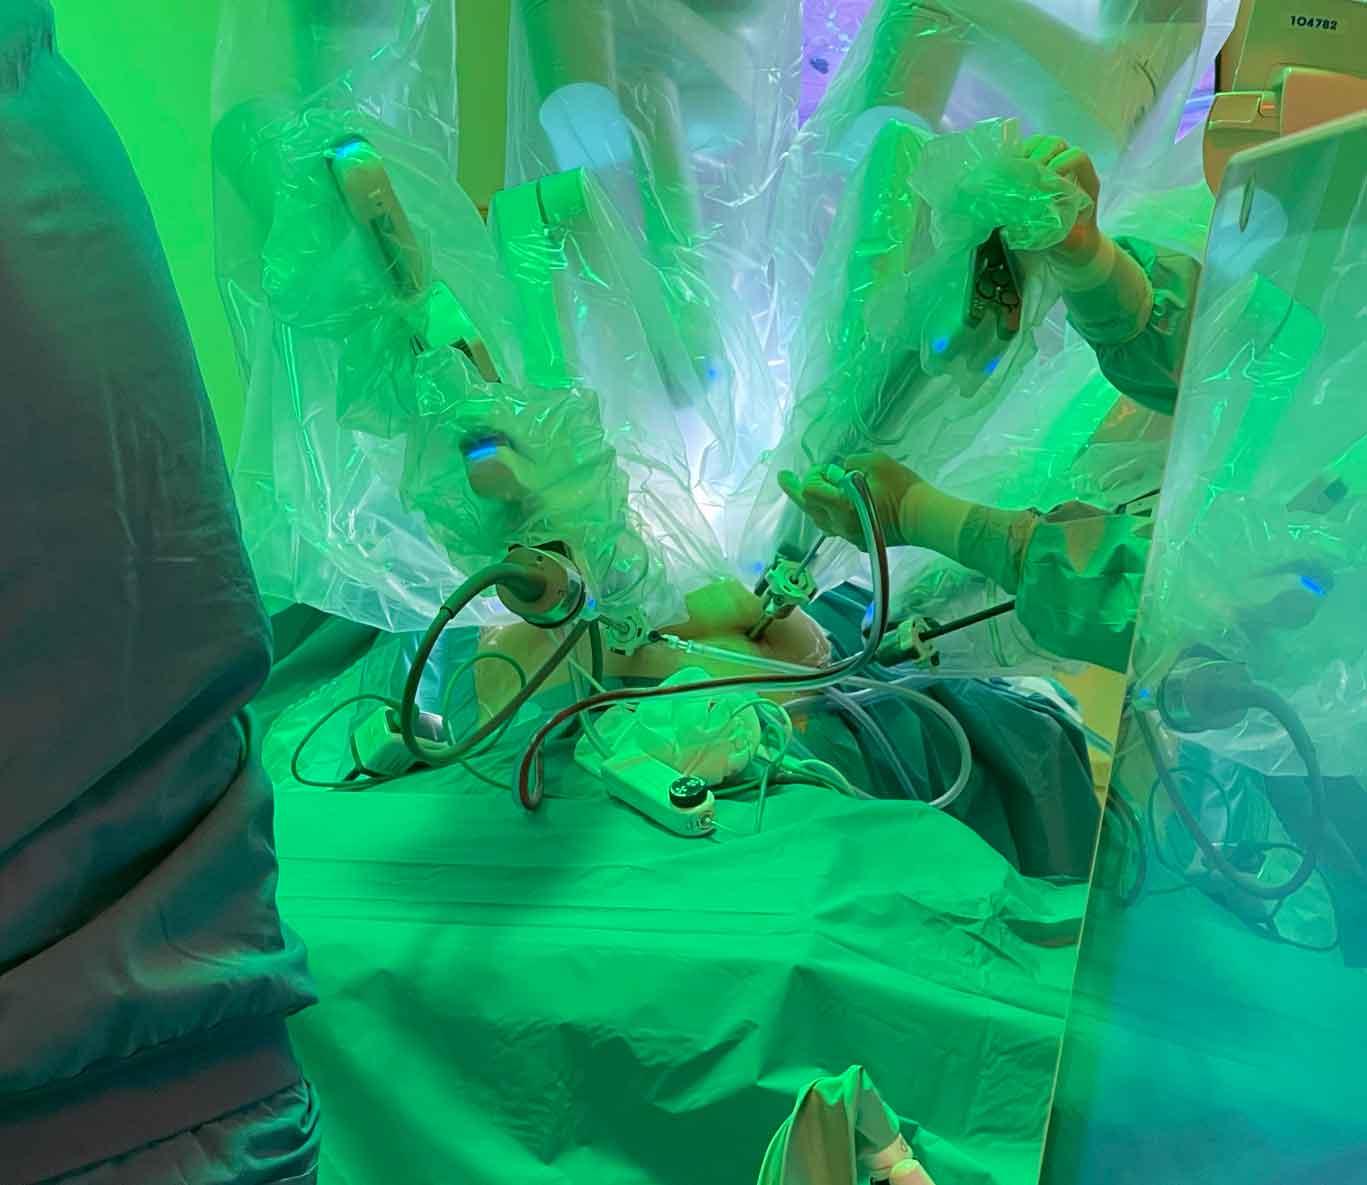 Gynækologisk-Obstetrisk Afdeling på Slagelse Sygehus tilbyder robotkirurgi til deres patienter. Robotten består af tre komponenter: kirurgens konsol, robotarmene og robottens hjerne. (Foto: Laura de Vos)